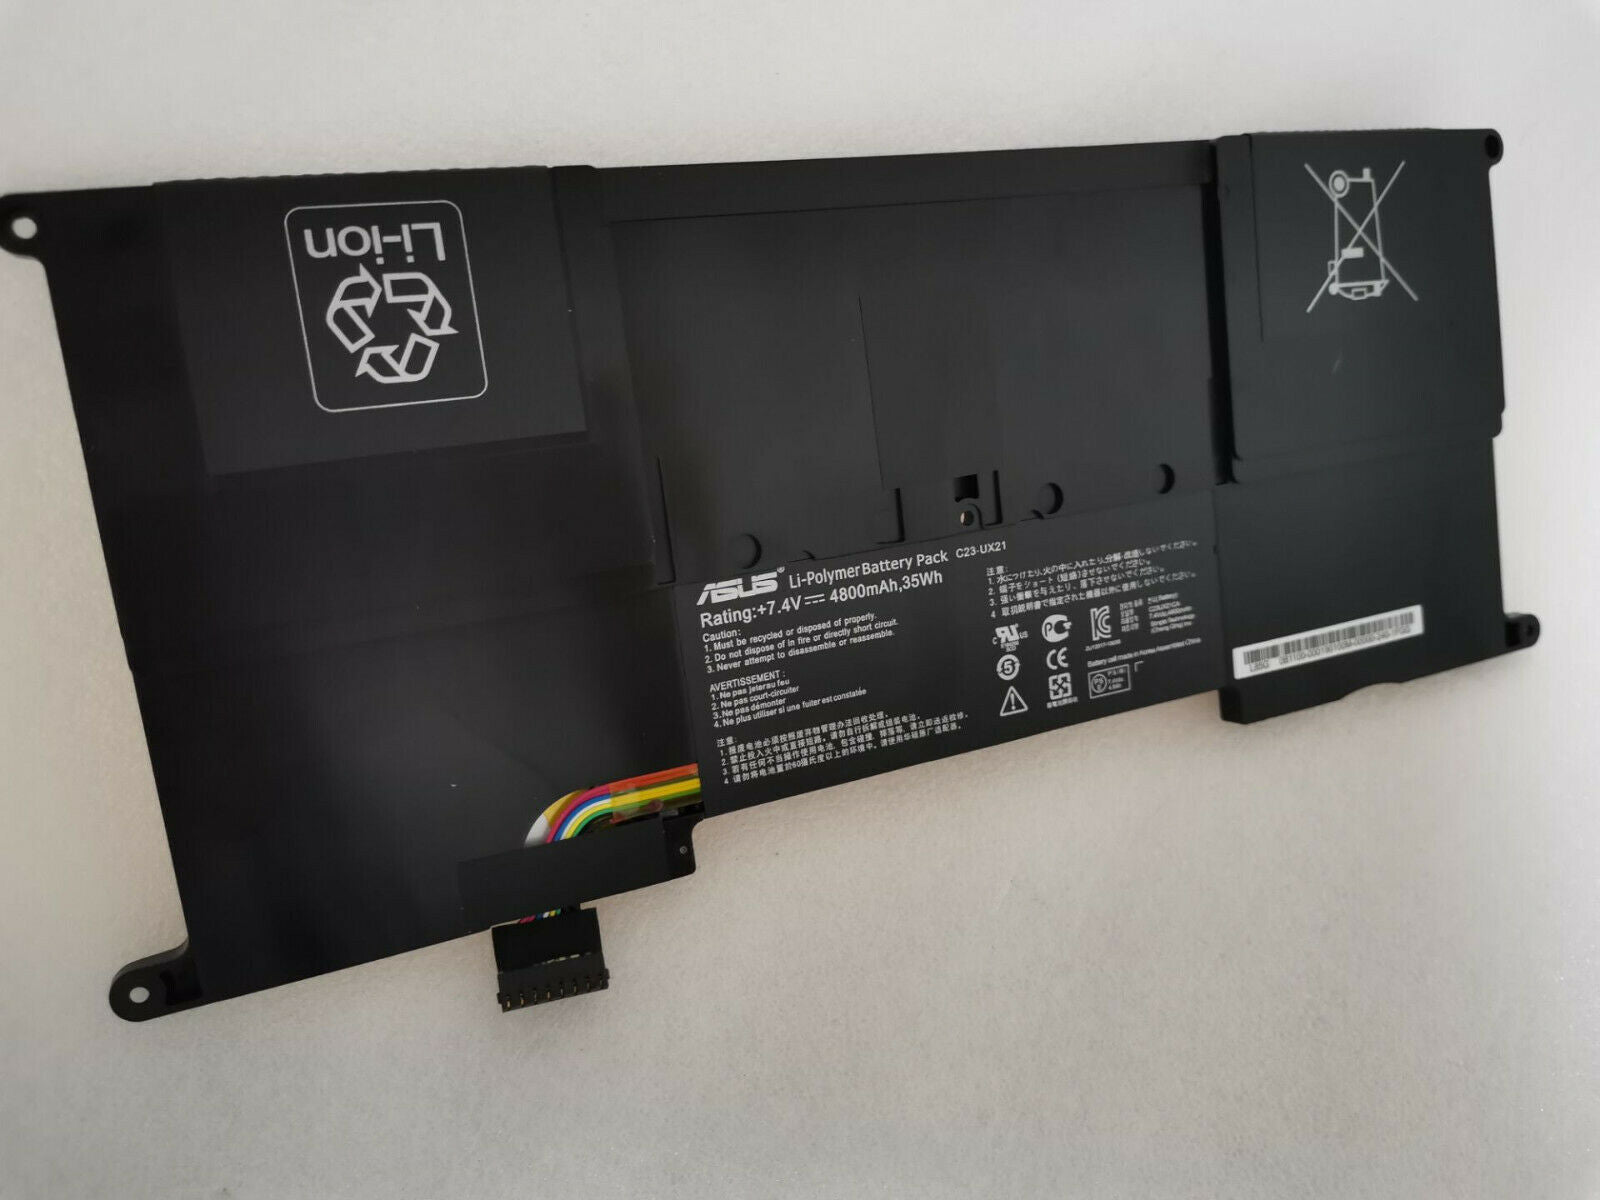 Original C23-UX21 C23UX21 Battery For Asus Zenbook Ultrabook UX21 UX21A UX21E Series 4800mAh 7.4V 35Wh 